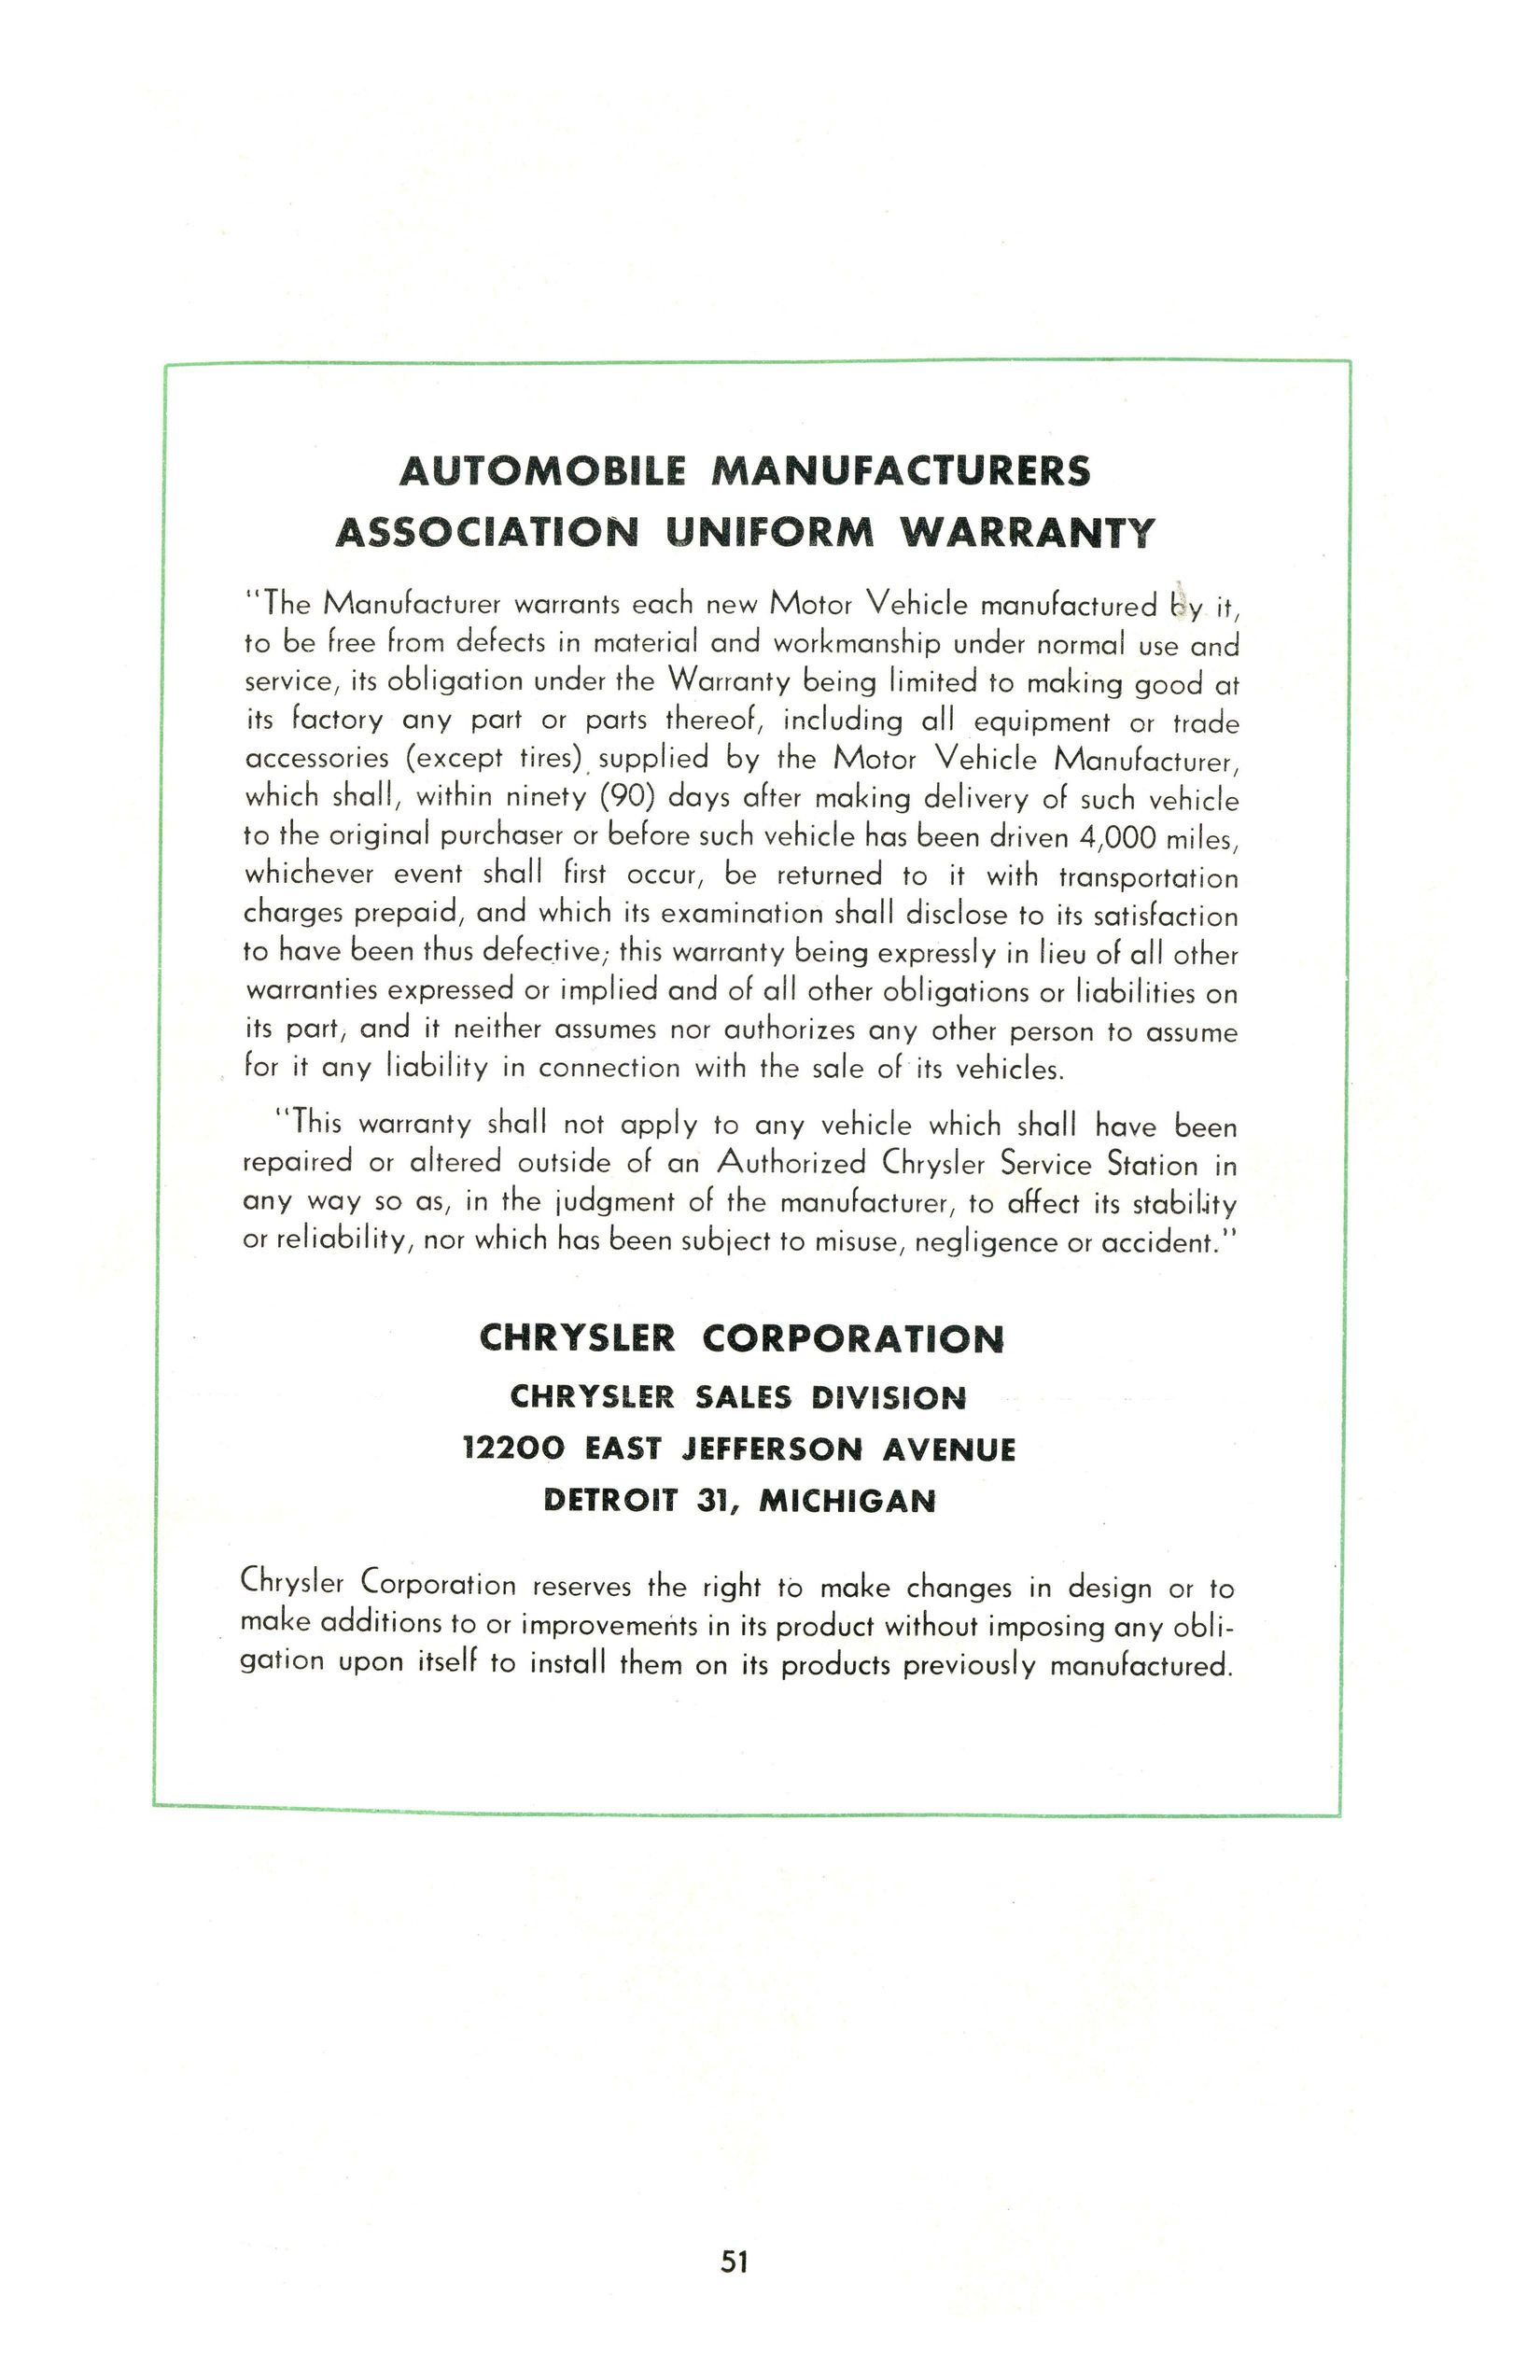 1951 Chrysler Manual-51